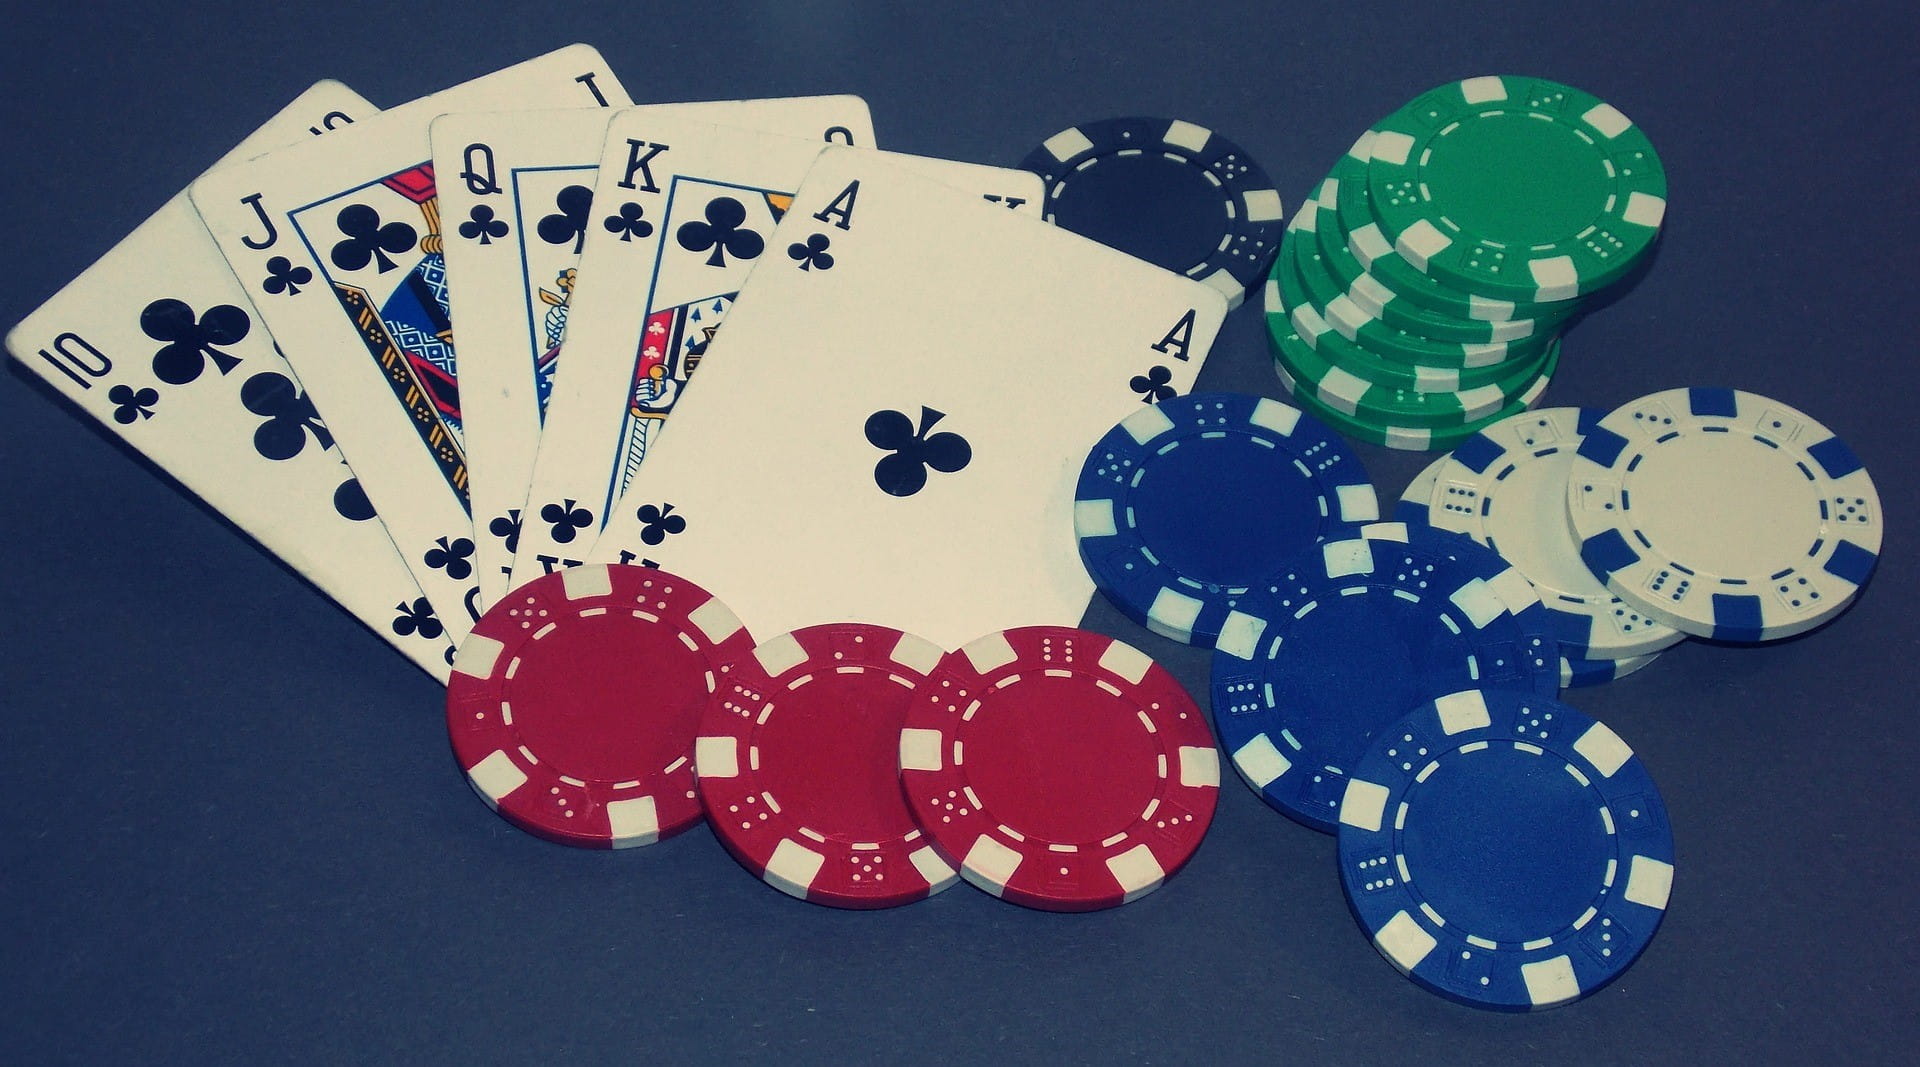 Lima kartu poker dan beberapa chip bermain dengan warna berbeda terletak di atas meja.